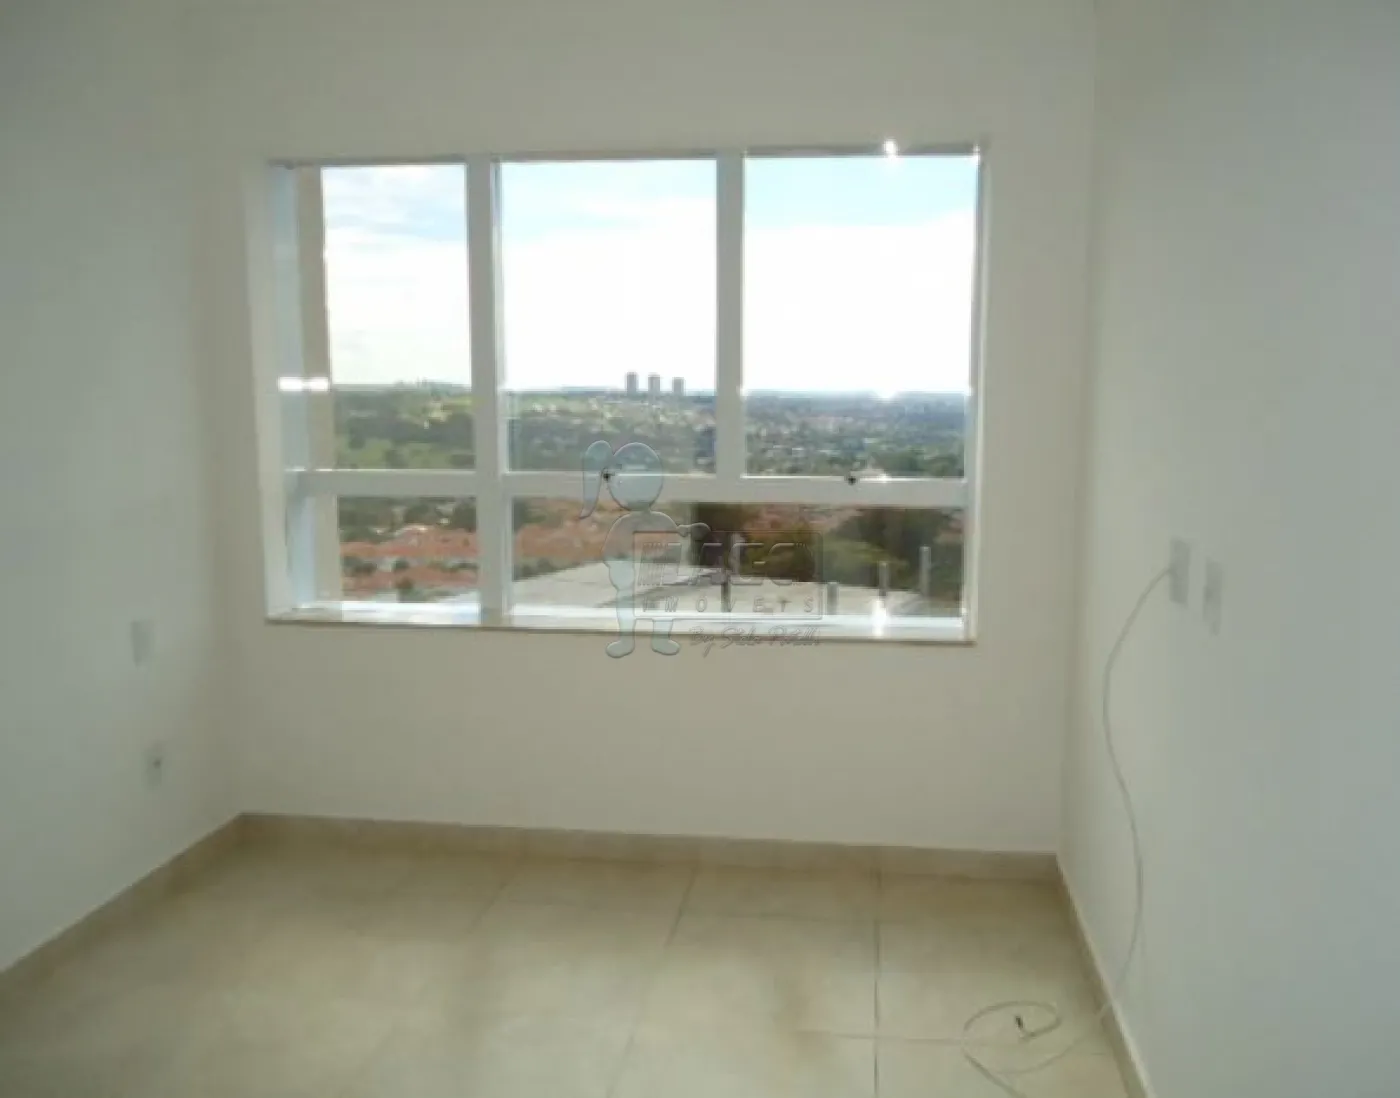 Alugar Apartamentos / Cobertura em Ribeirão Preto R$ 4.000,00 - Foto 9